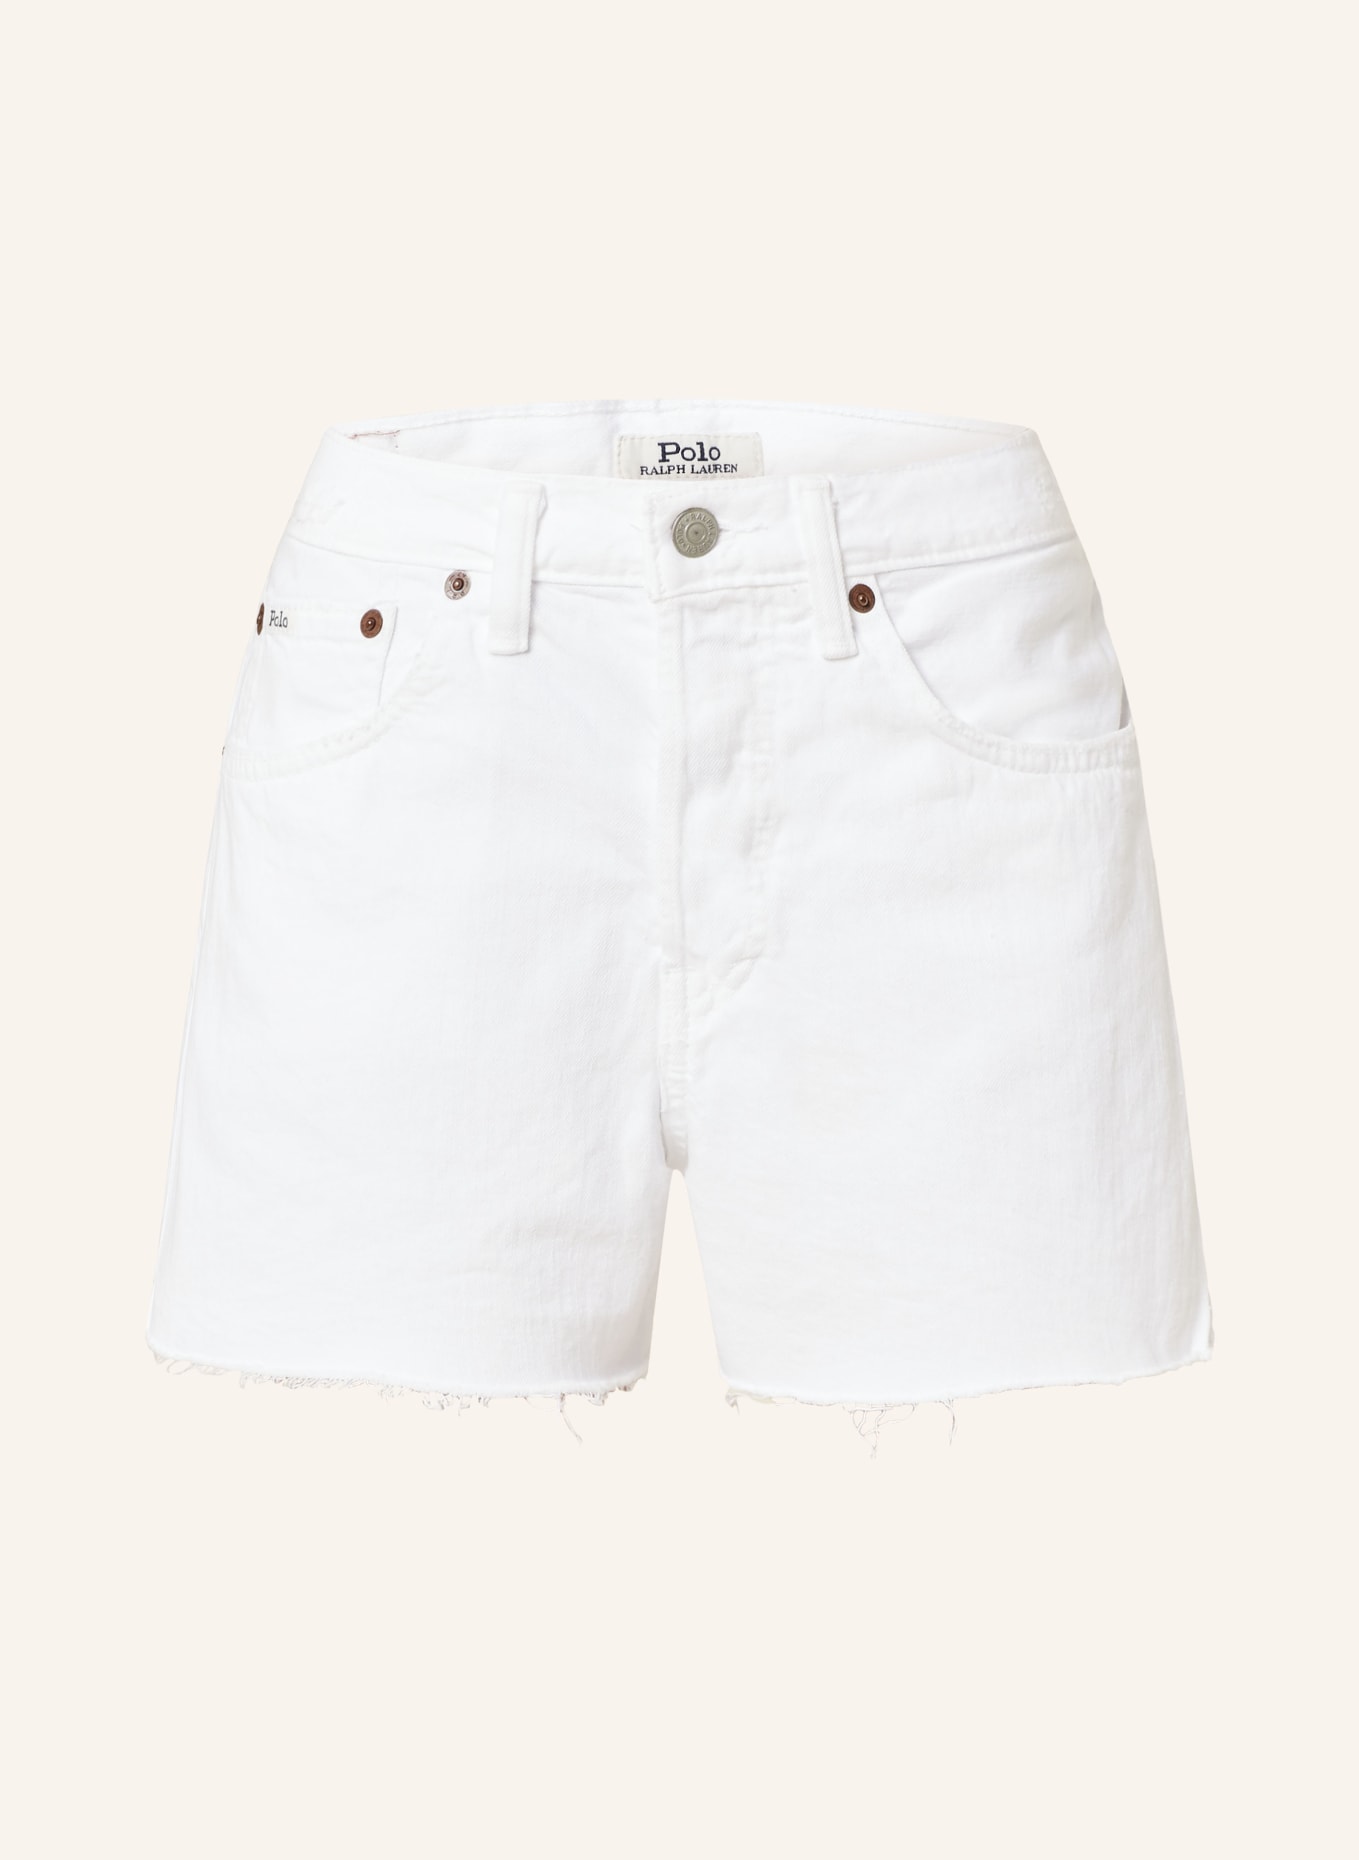 POLO RALPH LAUREN Denim shorts, Color: WHITE (Image 1)